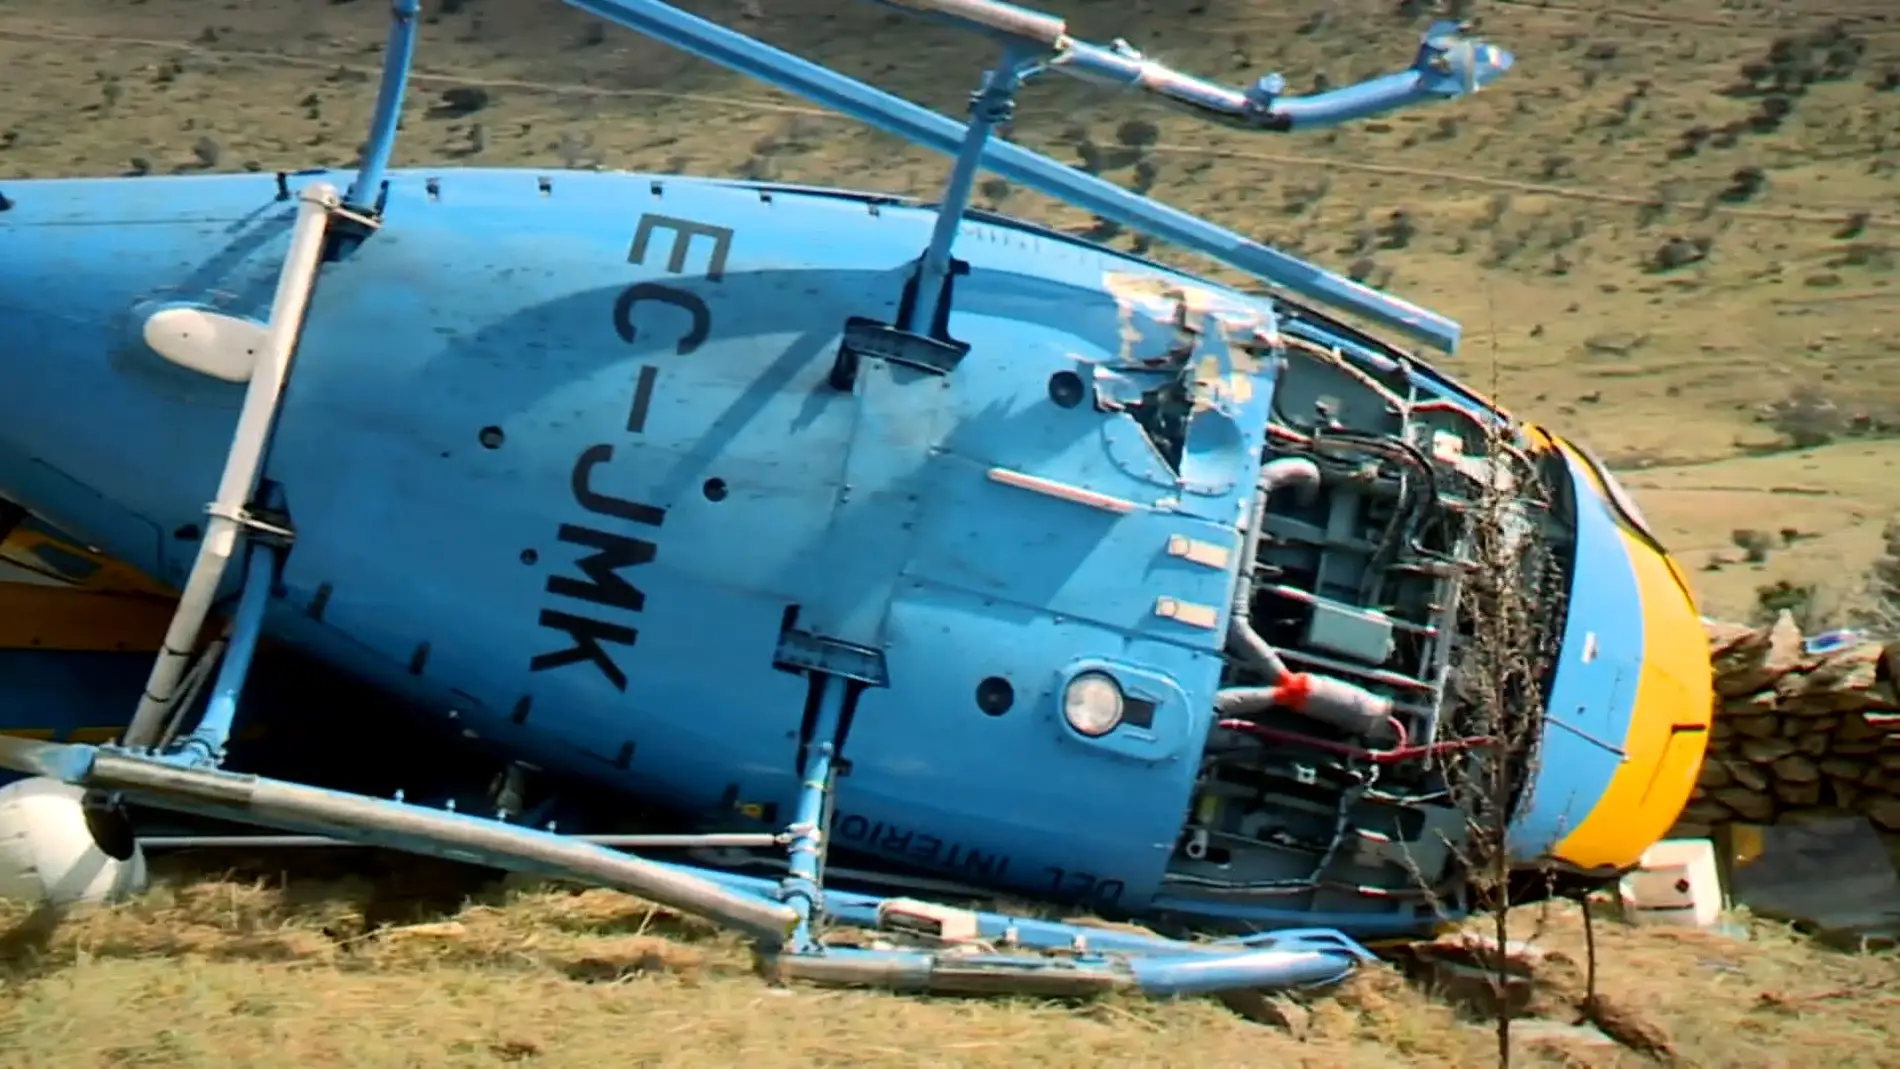 Había una tercera persona en el helicóptero accidentado de la DGT: la mujer del operador de cámara